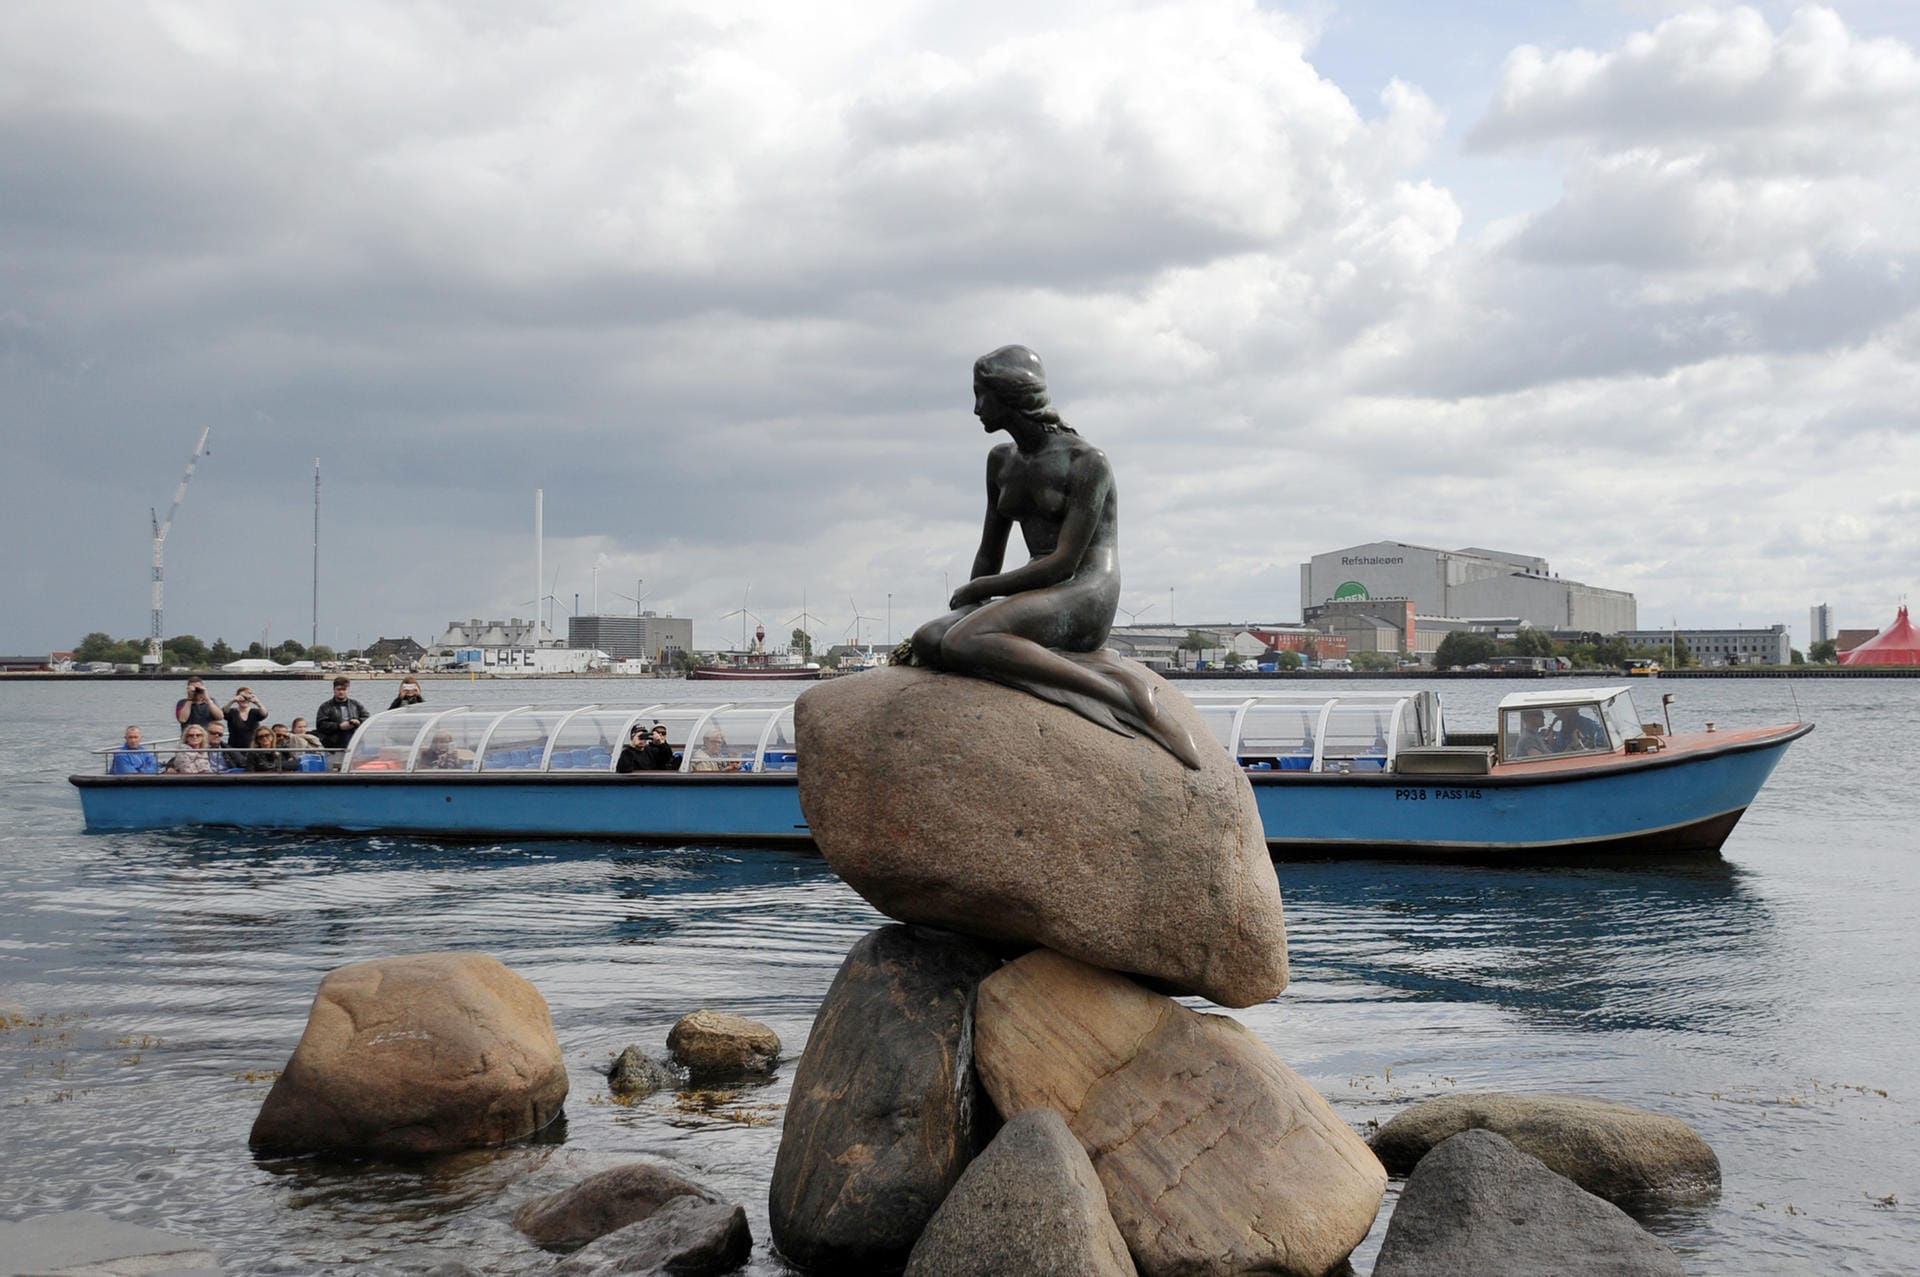 Die Kleine Meerjungfrau ist ein Wahrzeichen Kopenhagens – aber längst nicht der einzige Grund für einen Besuch der dänischen Hauptstadt. Im Ranking der besten Städtereiseziele 2019 des "Lonely Planet" liegt die Metropole auf Platz eins.